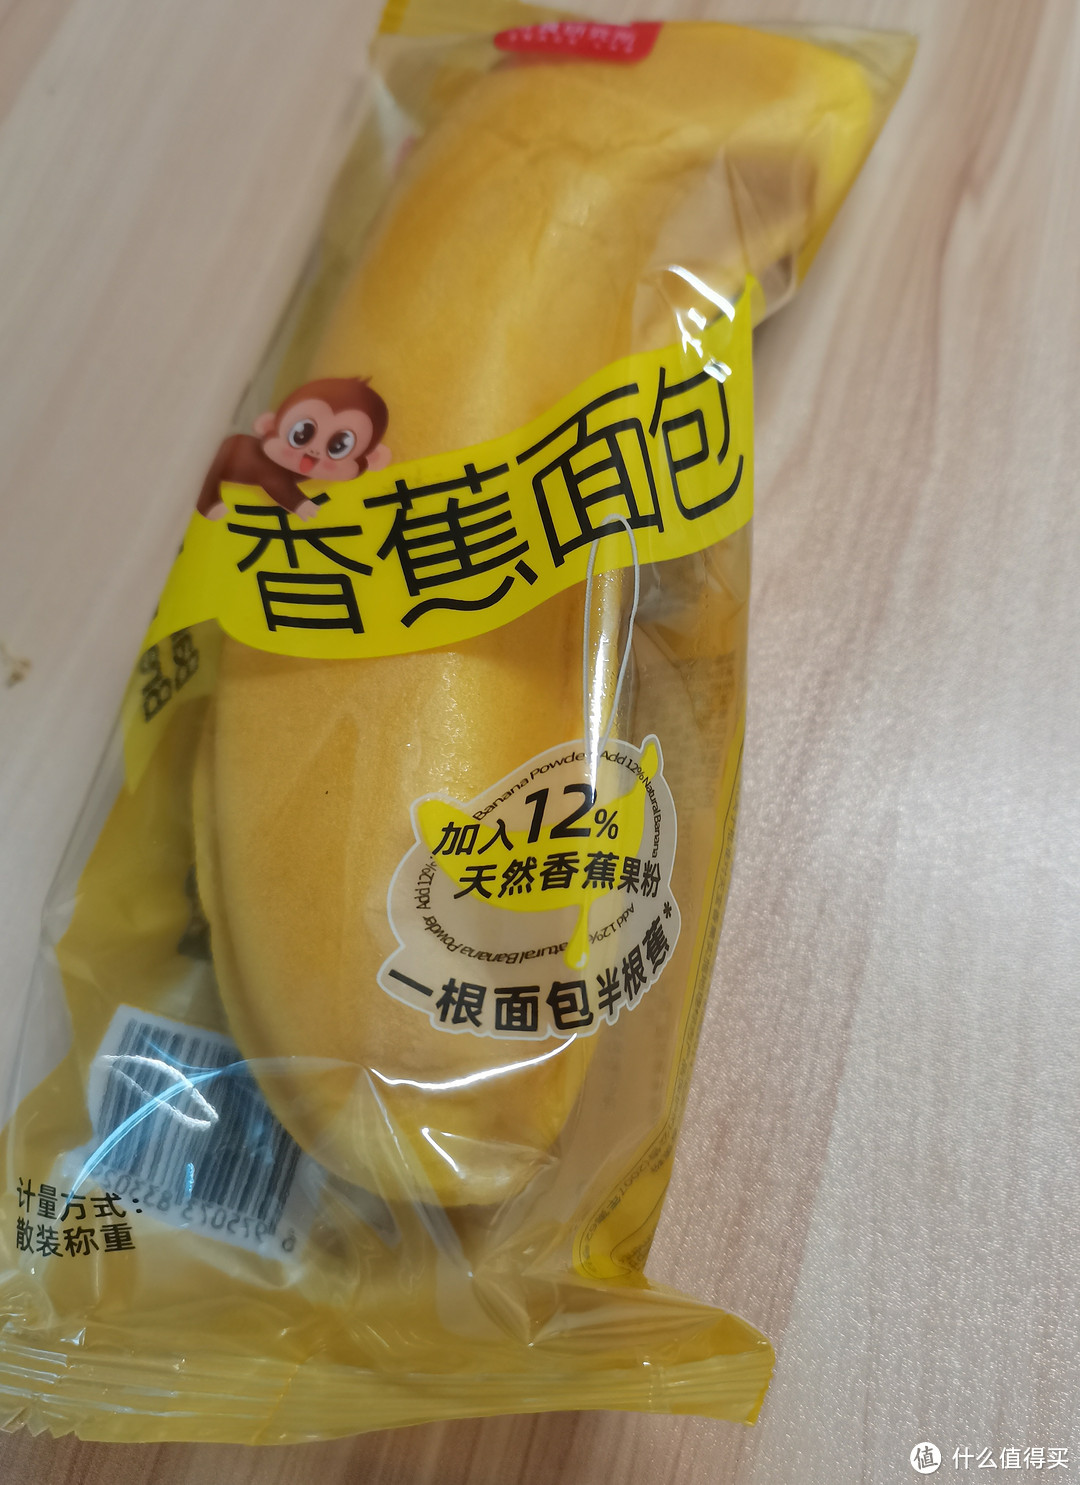 这个香蕉面包好好吃呀